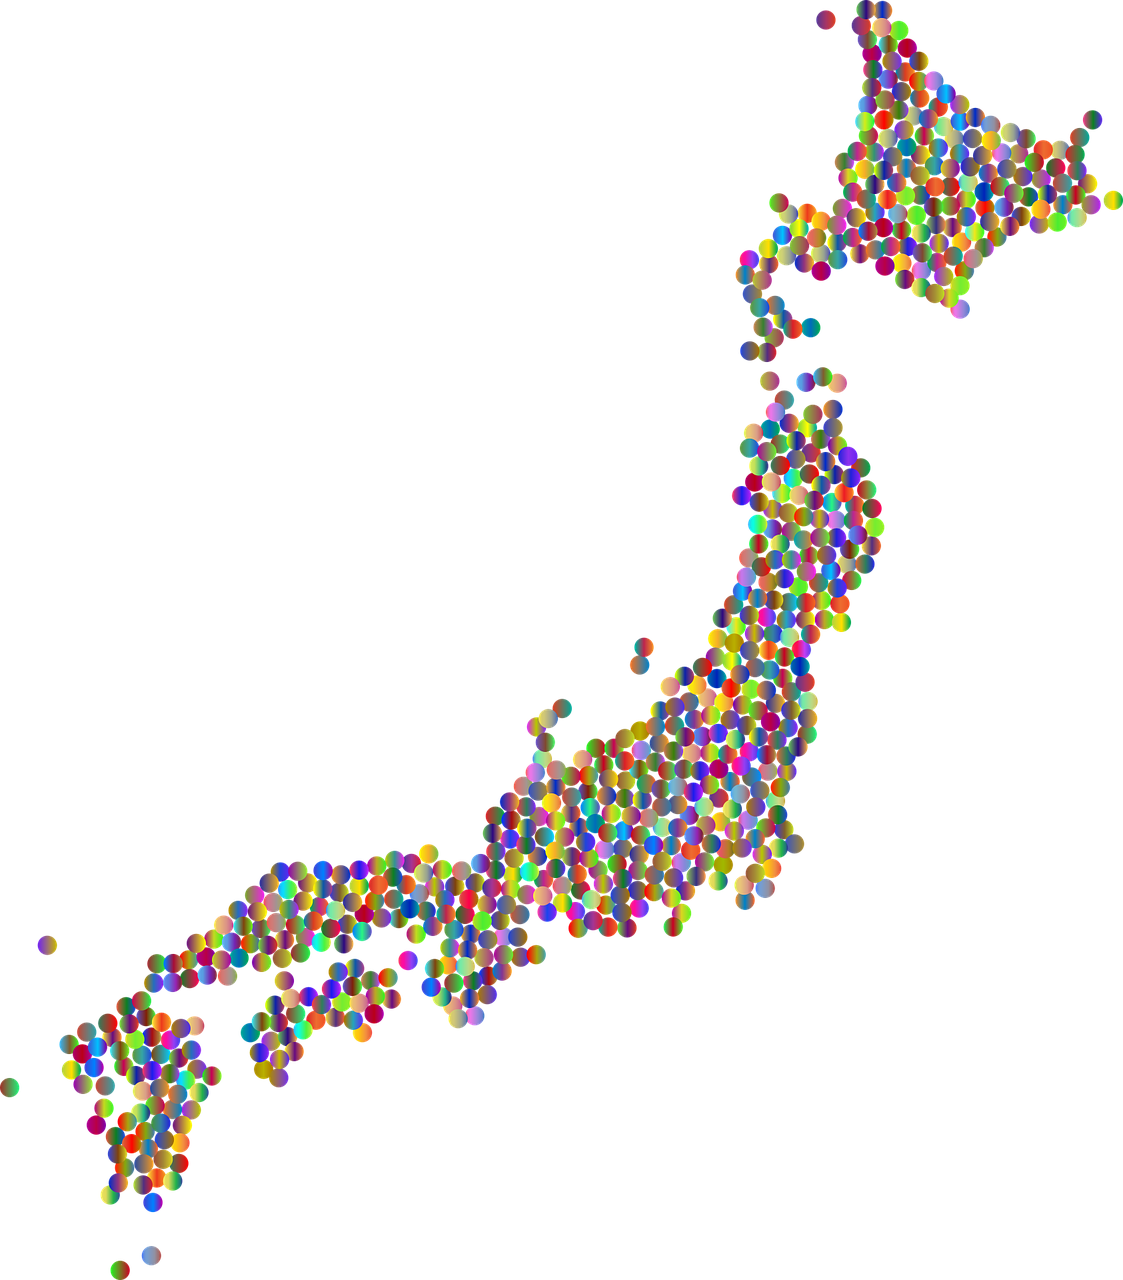 japan circles dots map country 5905996